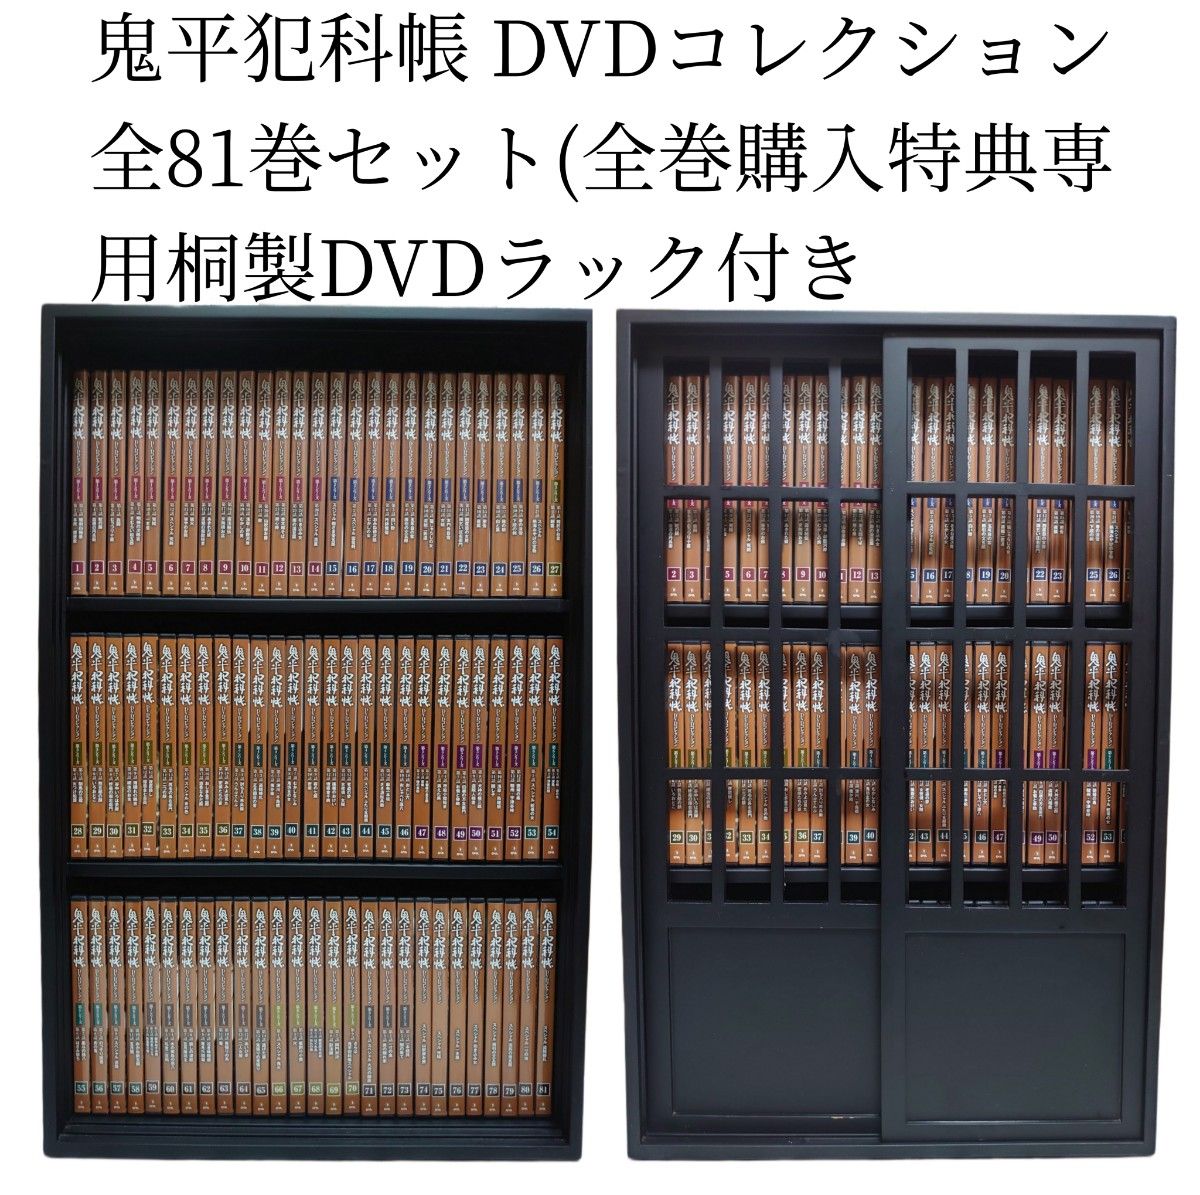 鬼平犯科帳 DVDコレクション 全81巻セット(全巻購入特典専用桐製DVD